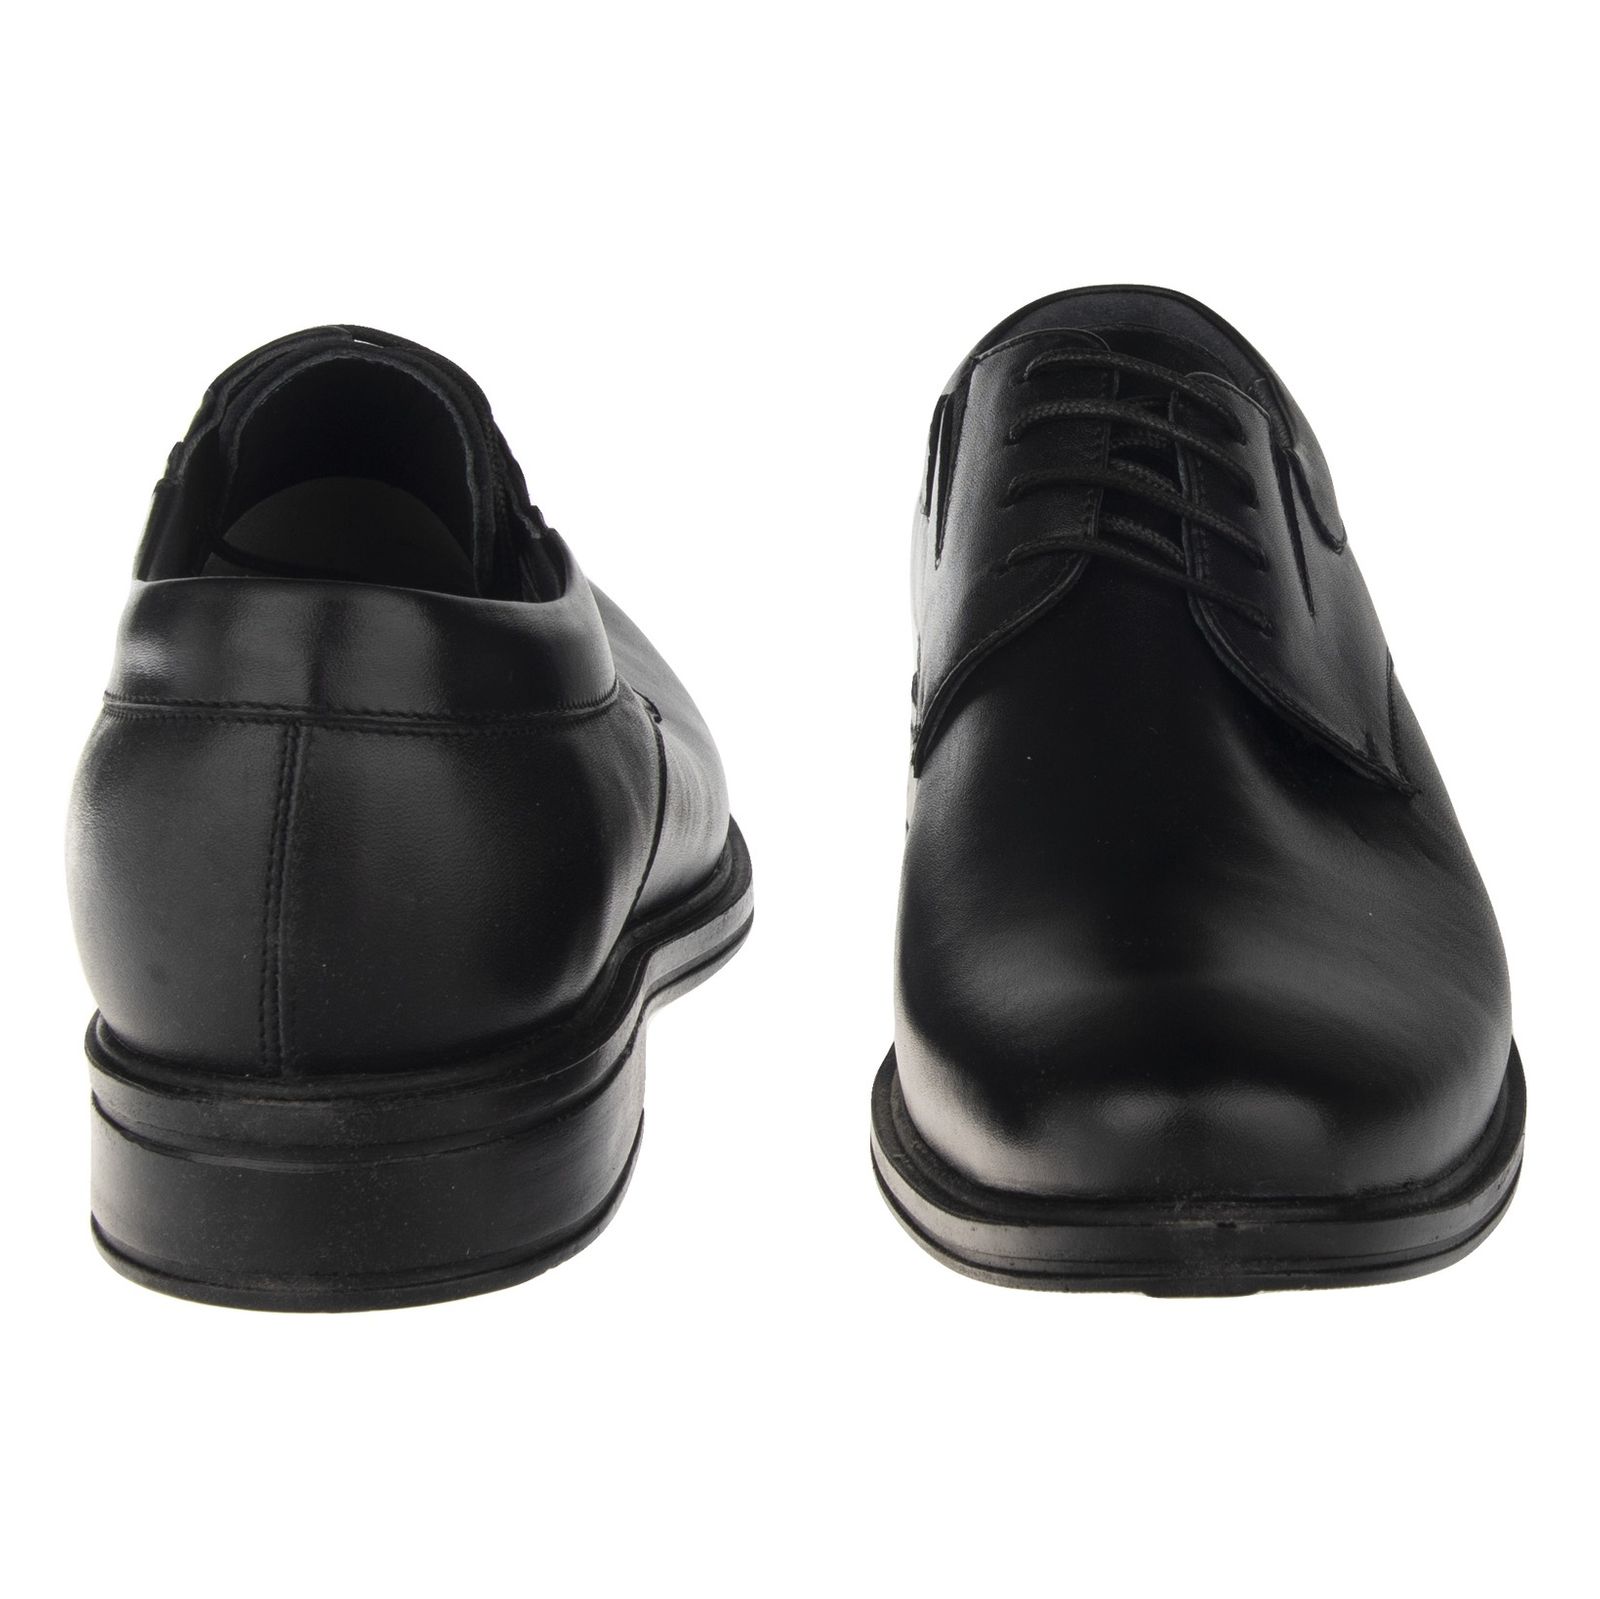 کفش مردانه دلفارد مدل A5031 - مشکی - 4